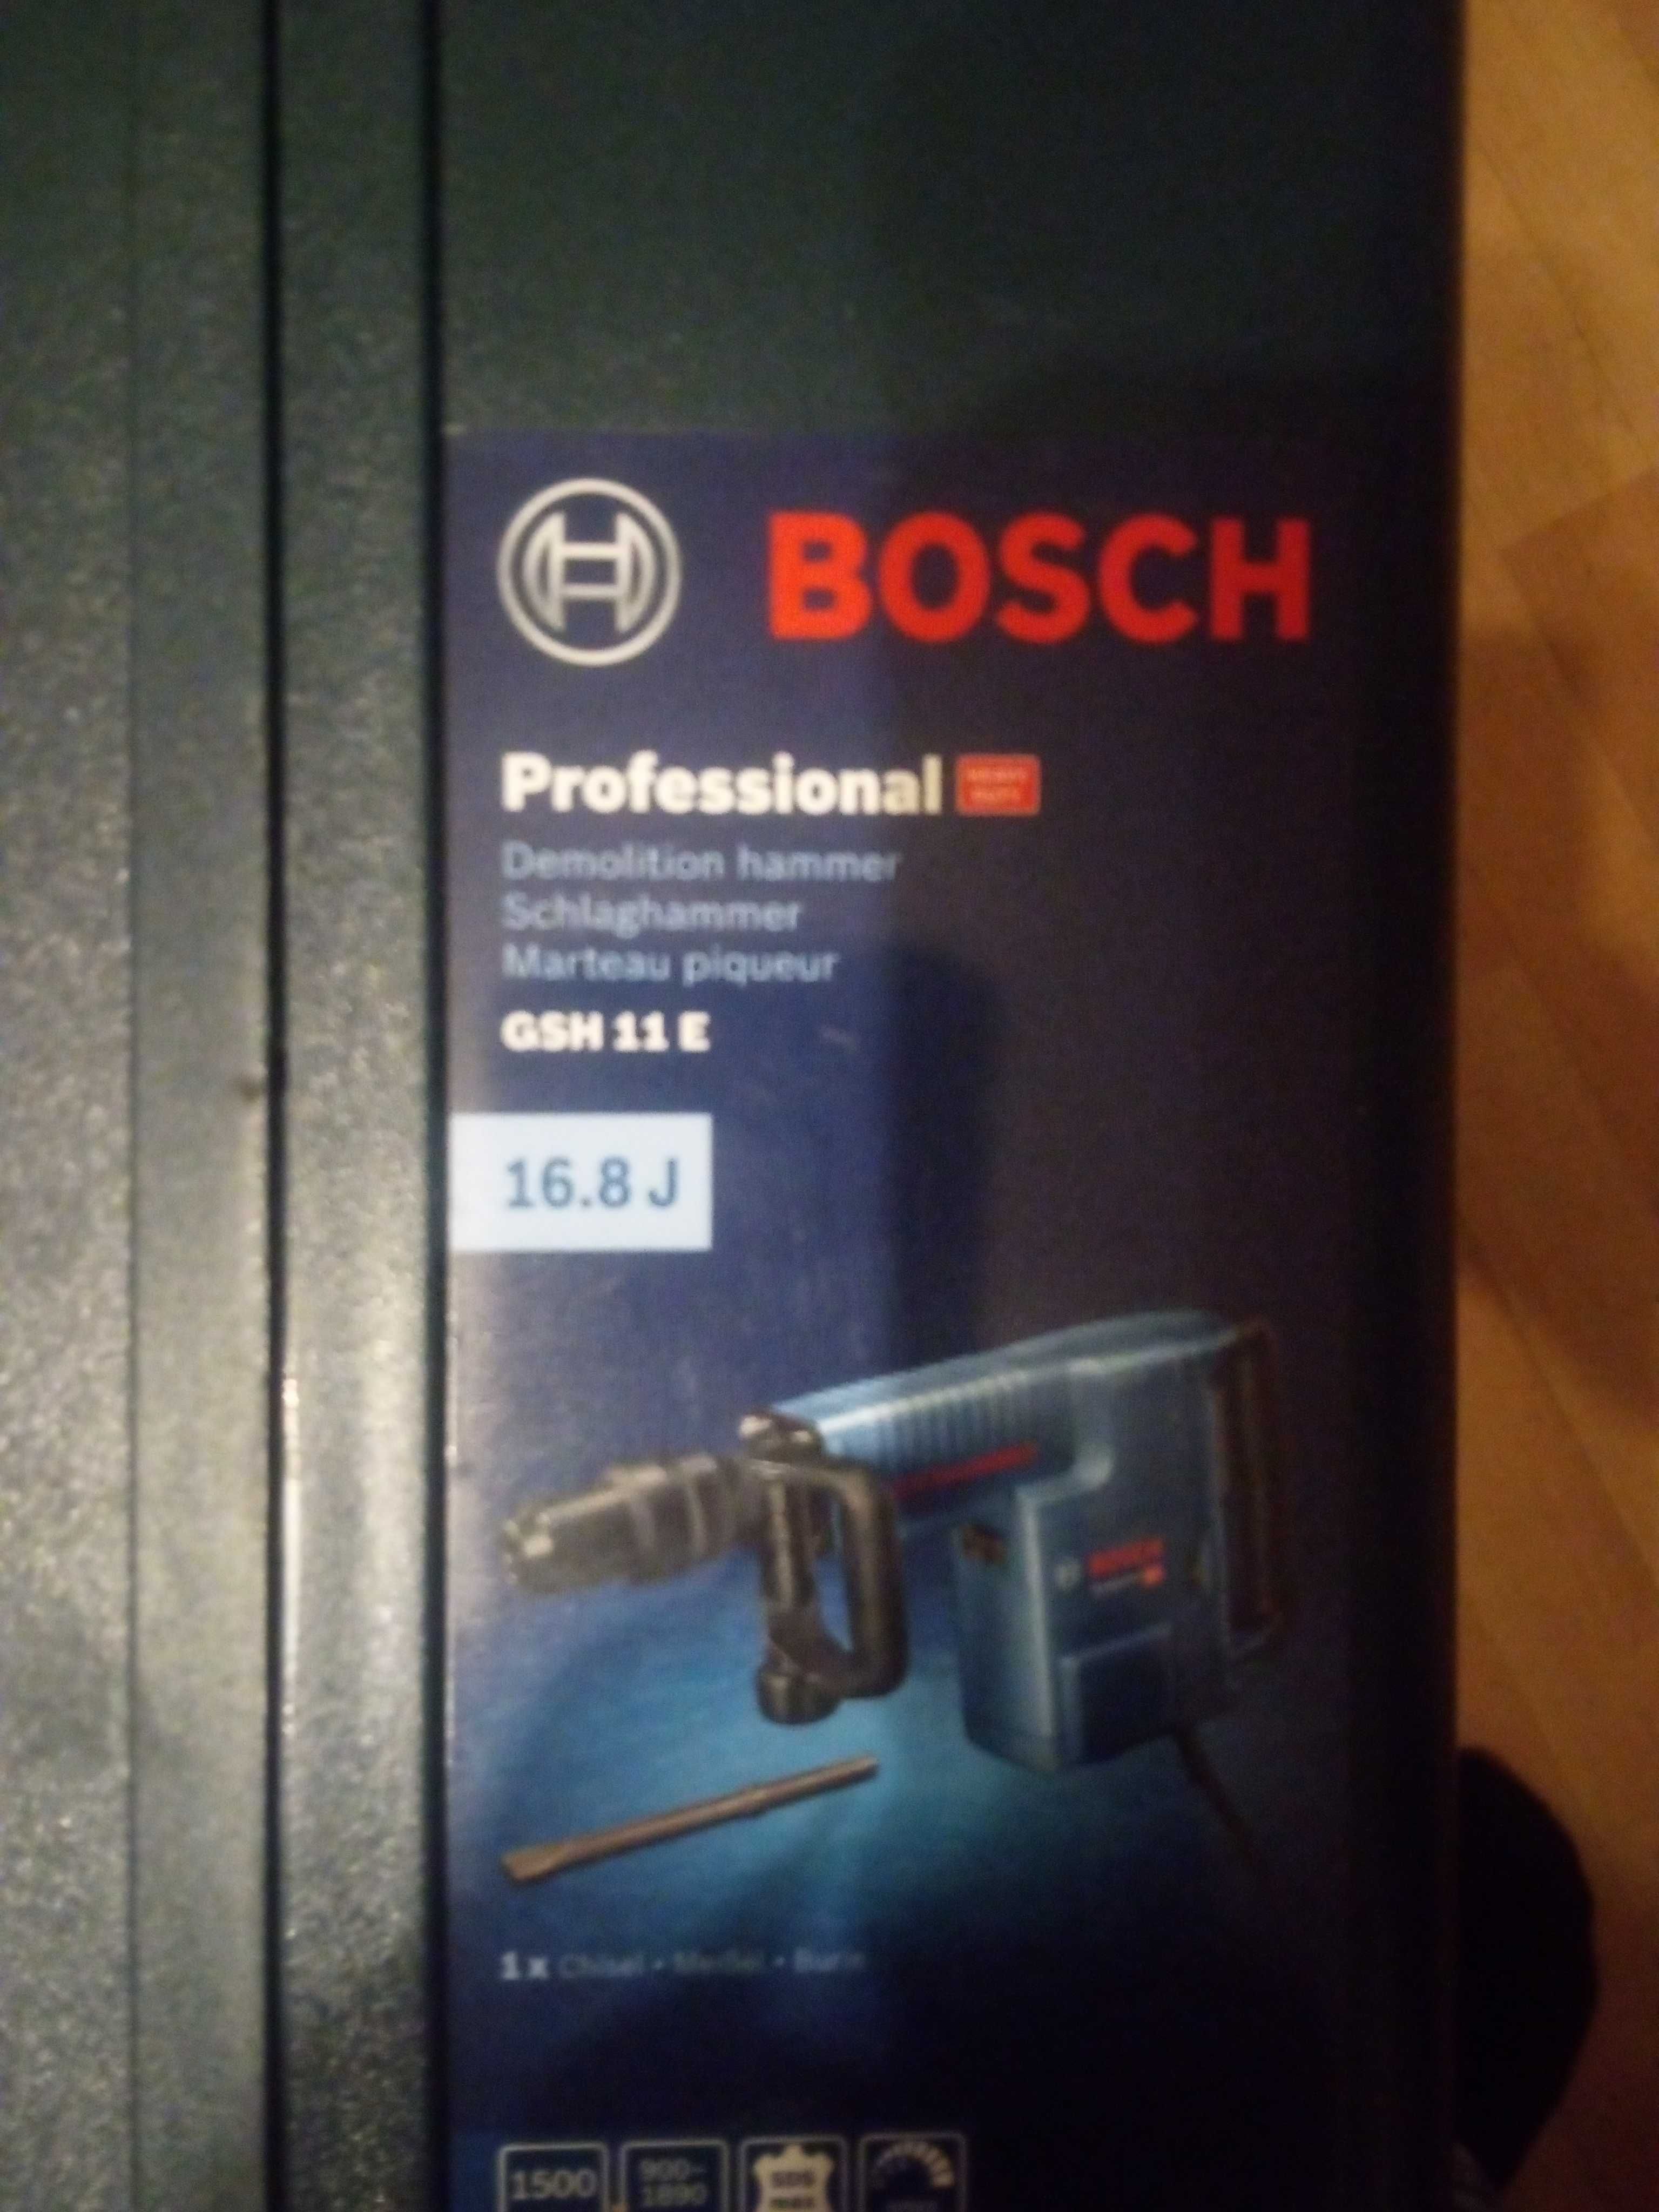 Bosch walizka GSH 11 E